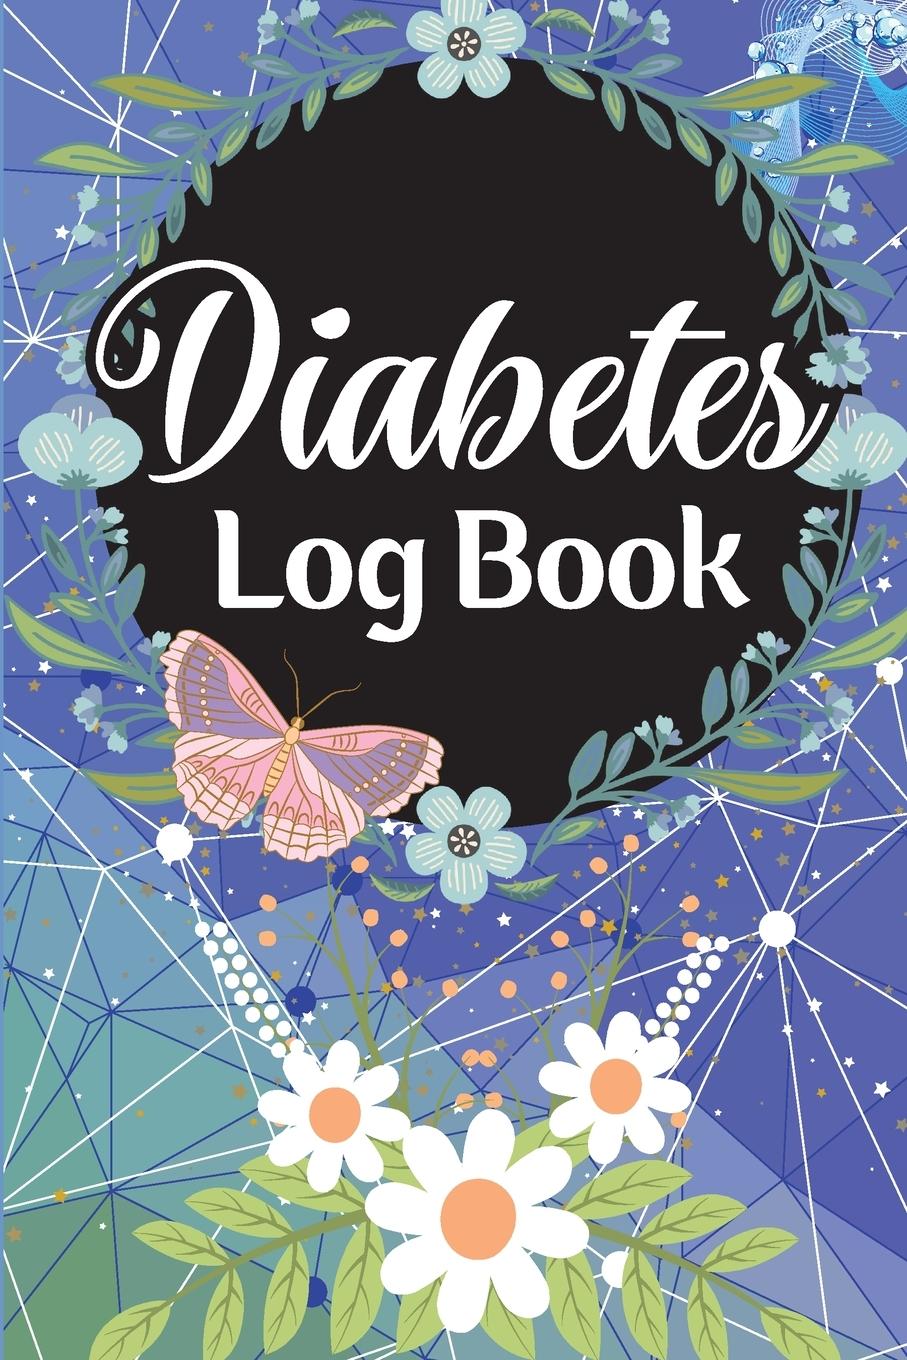 Kniha Diabetes Log Book 